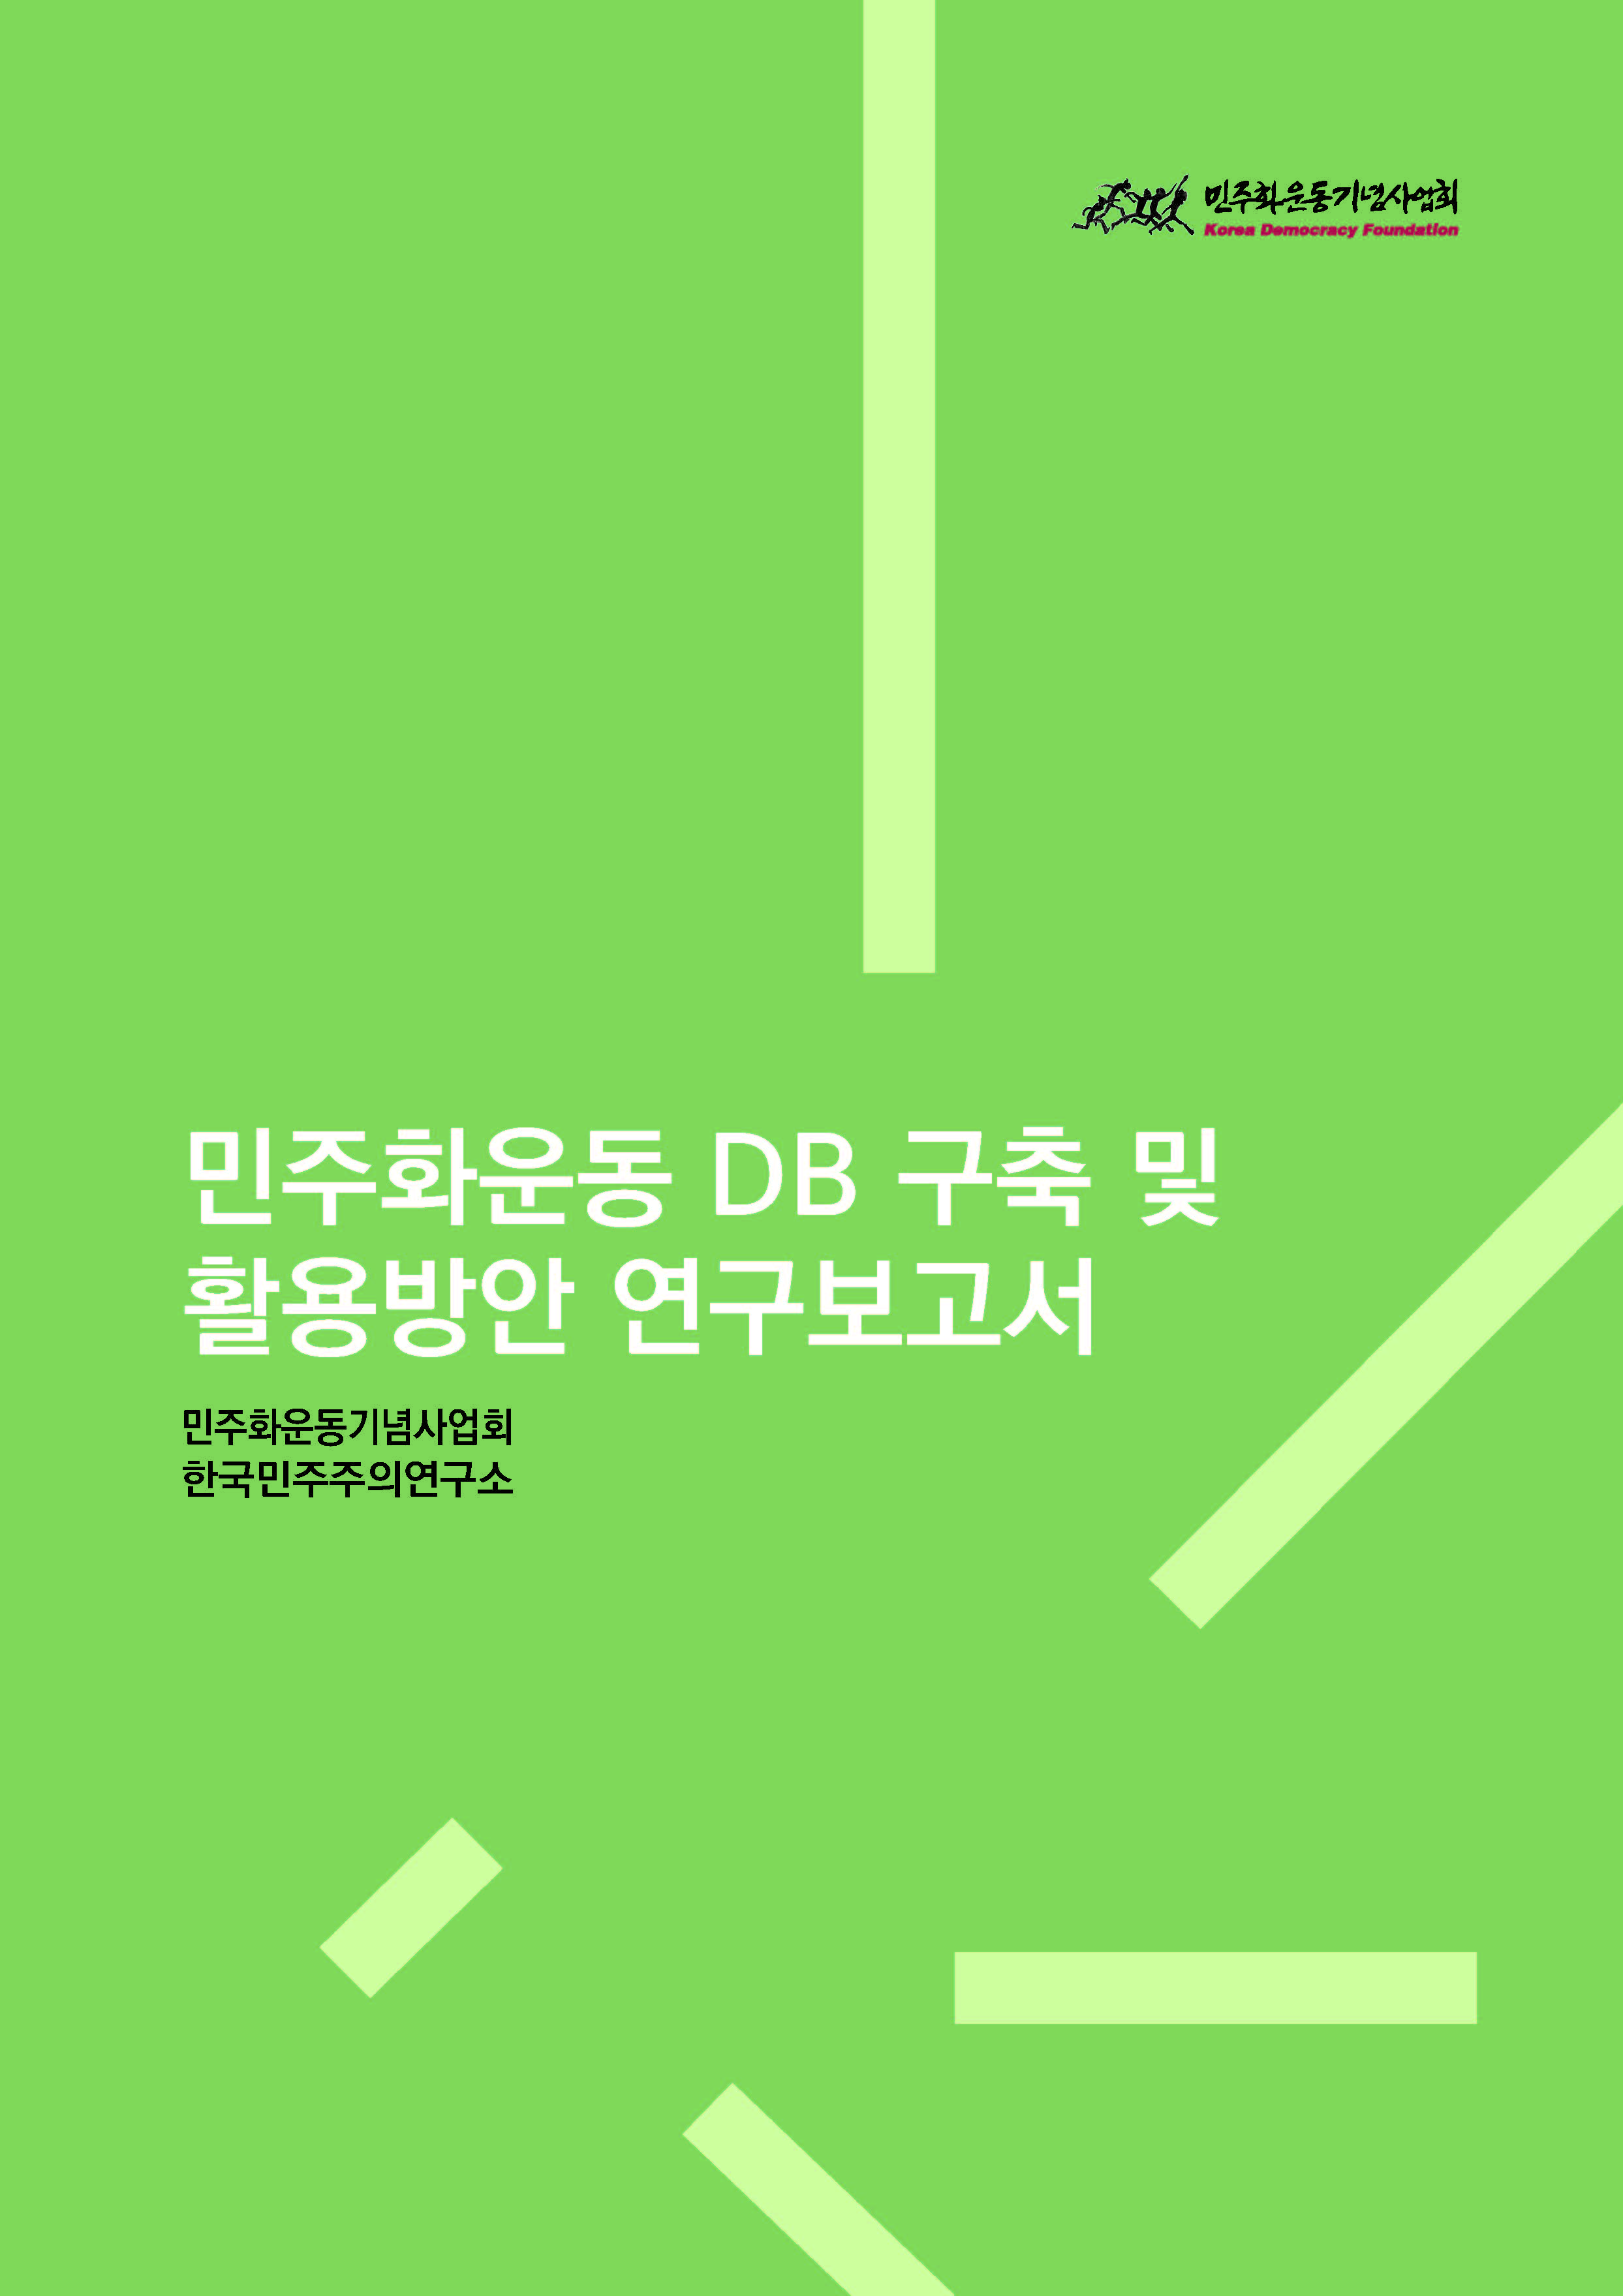 [연구보고서] 민주화운동 DB 구축 및 활용방안